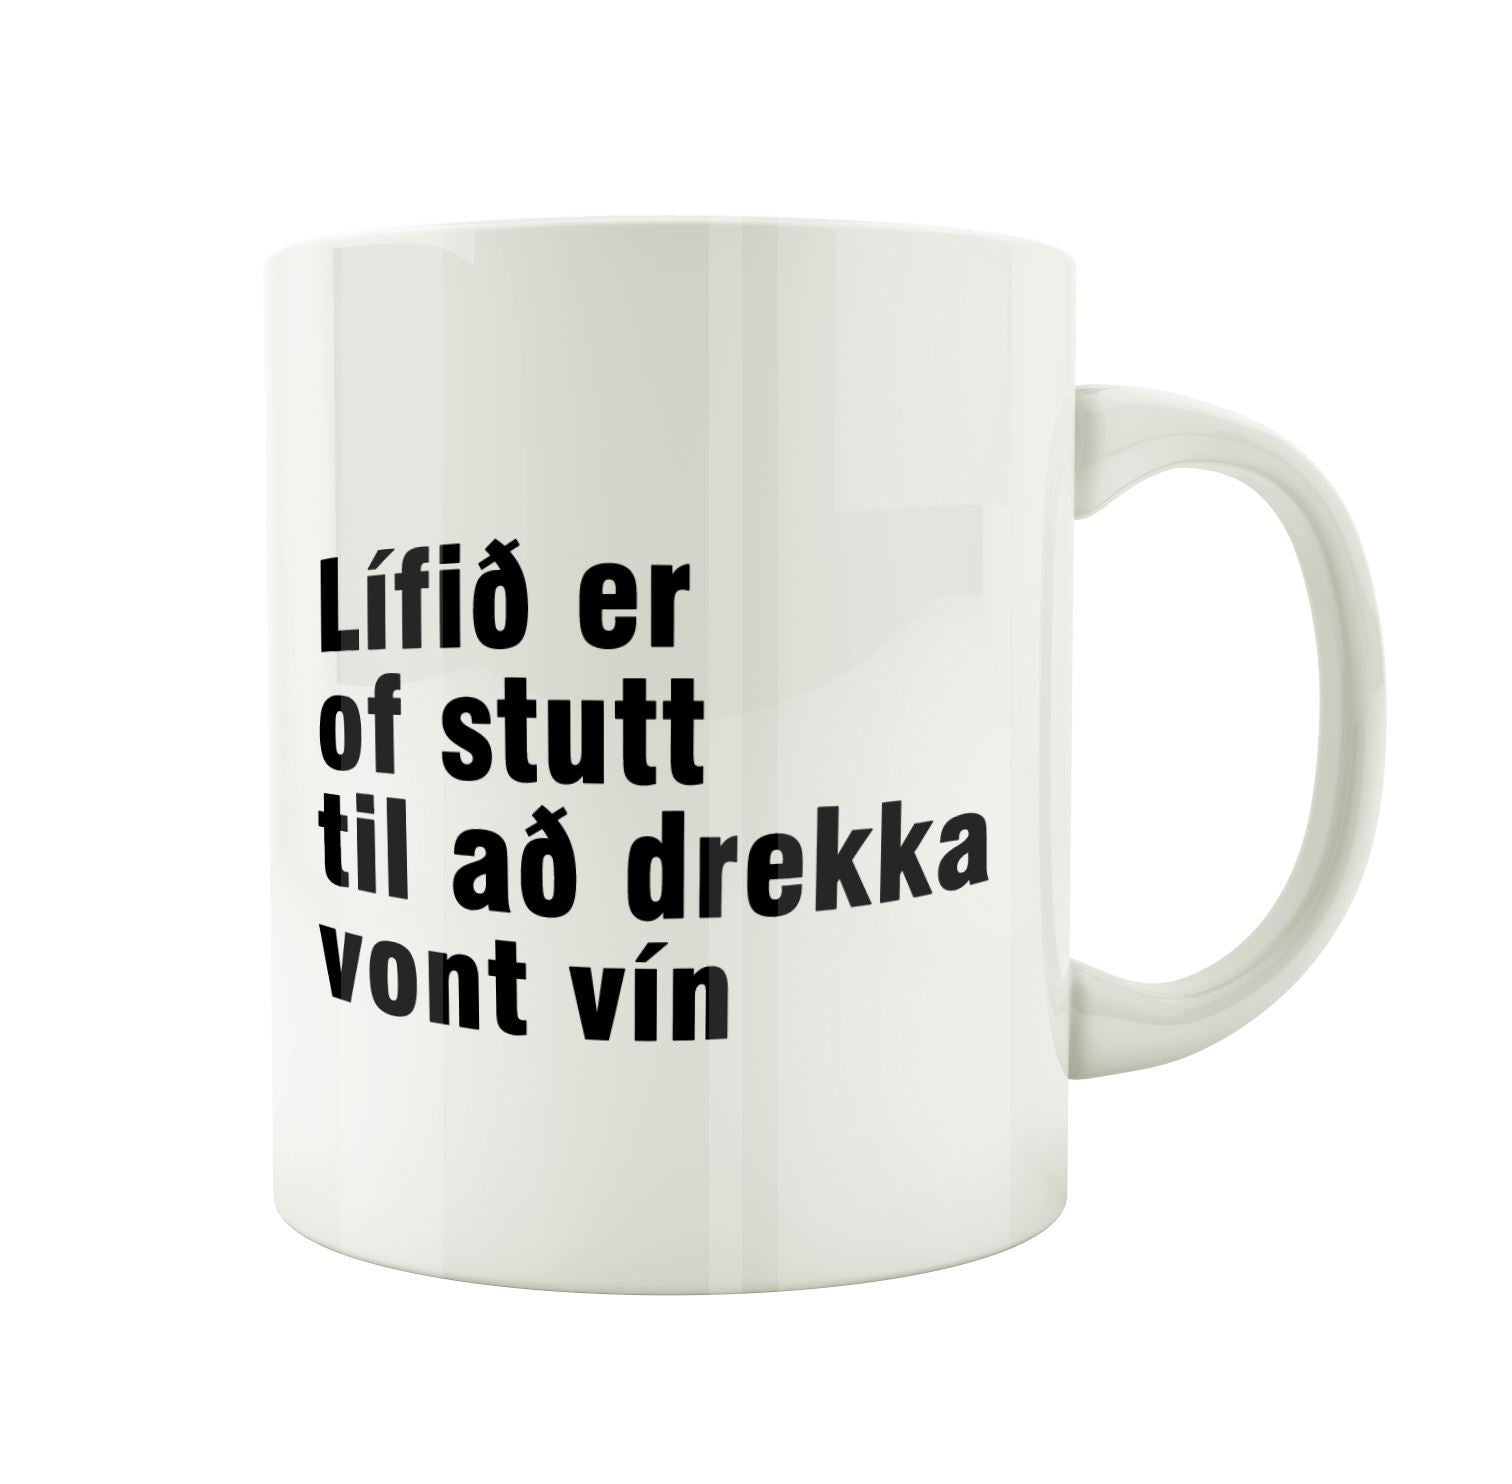 Lífið er of stutt til að drekka vont vín